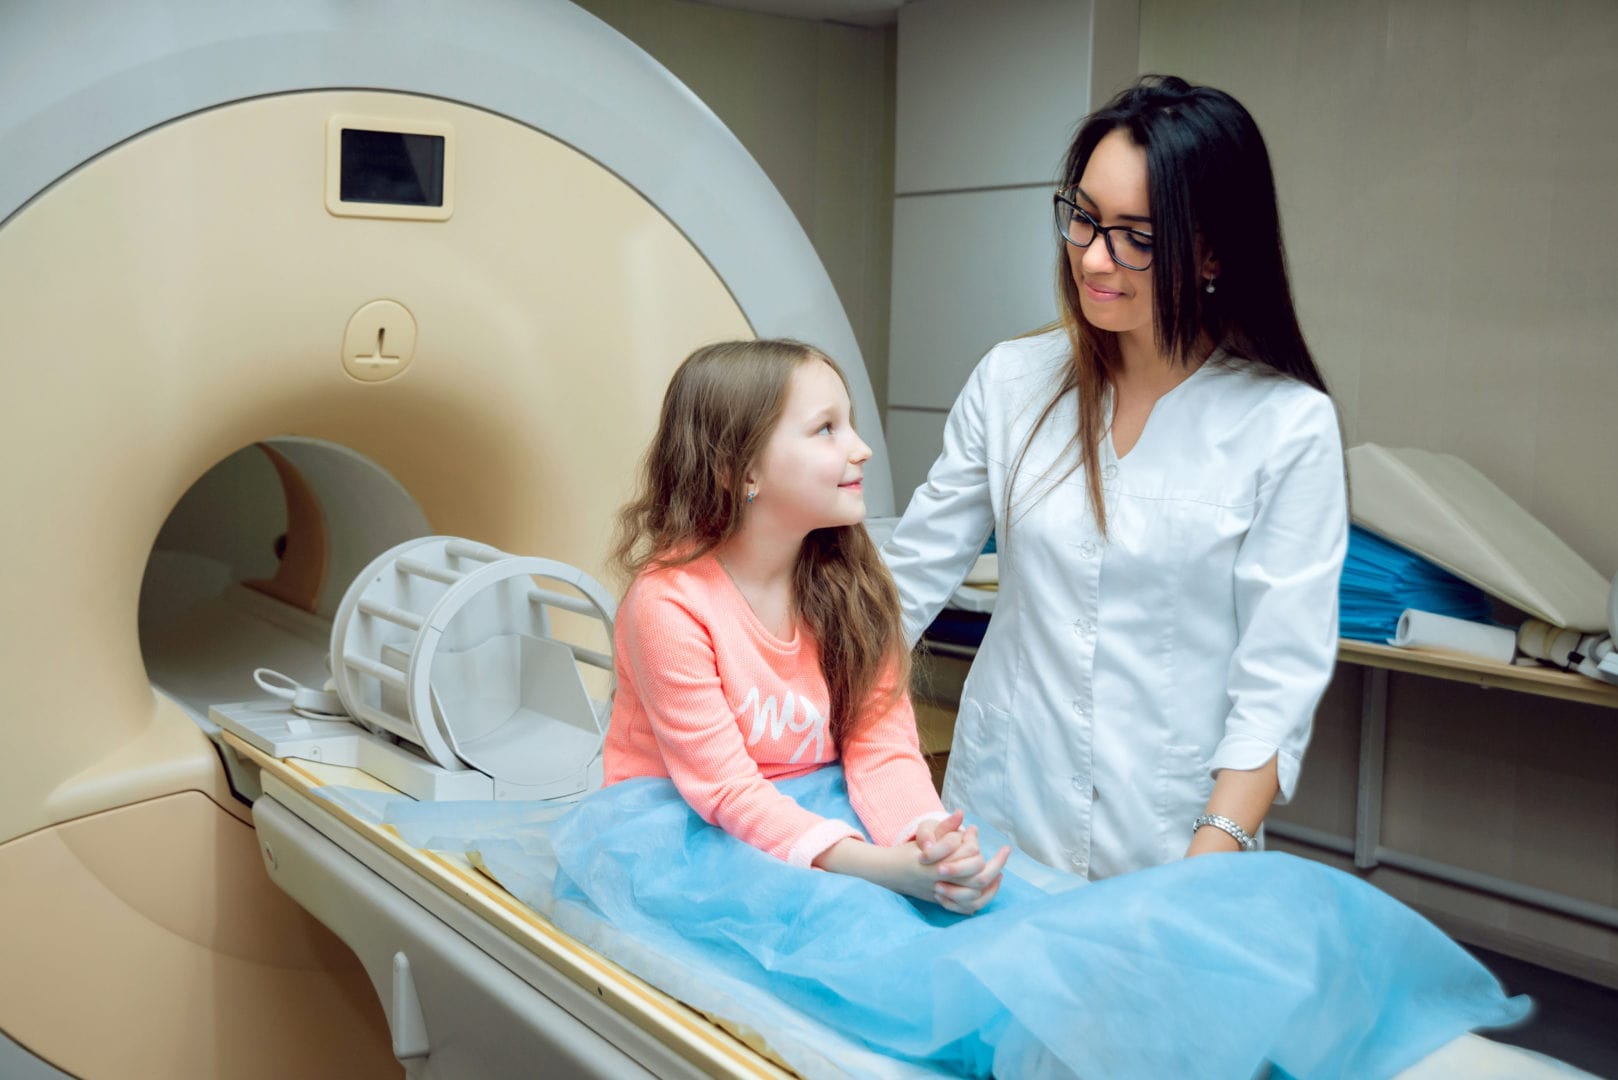 МРТ головного мозга детям: как проходит диагностика